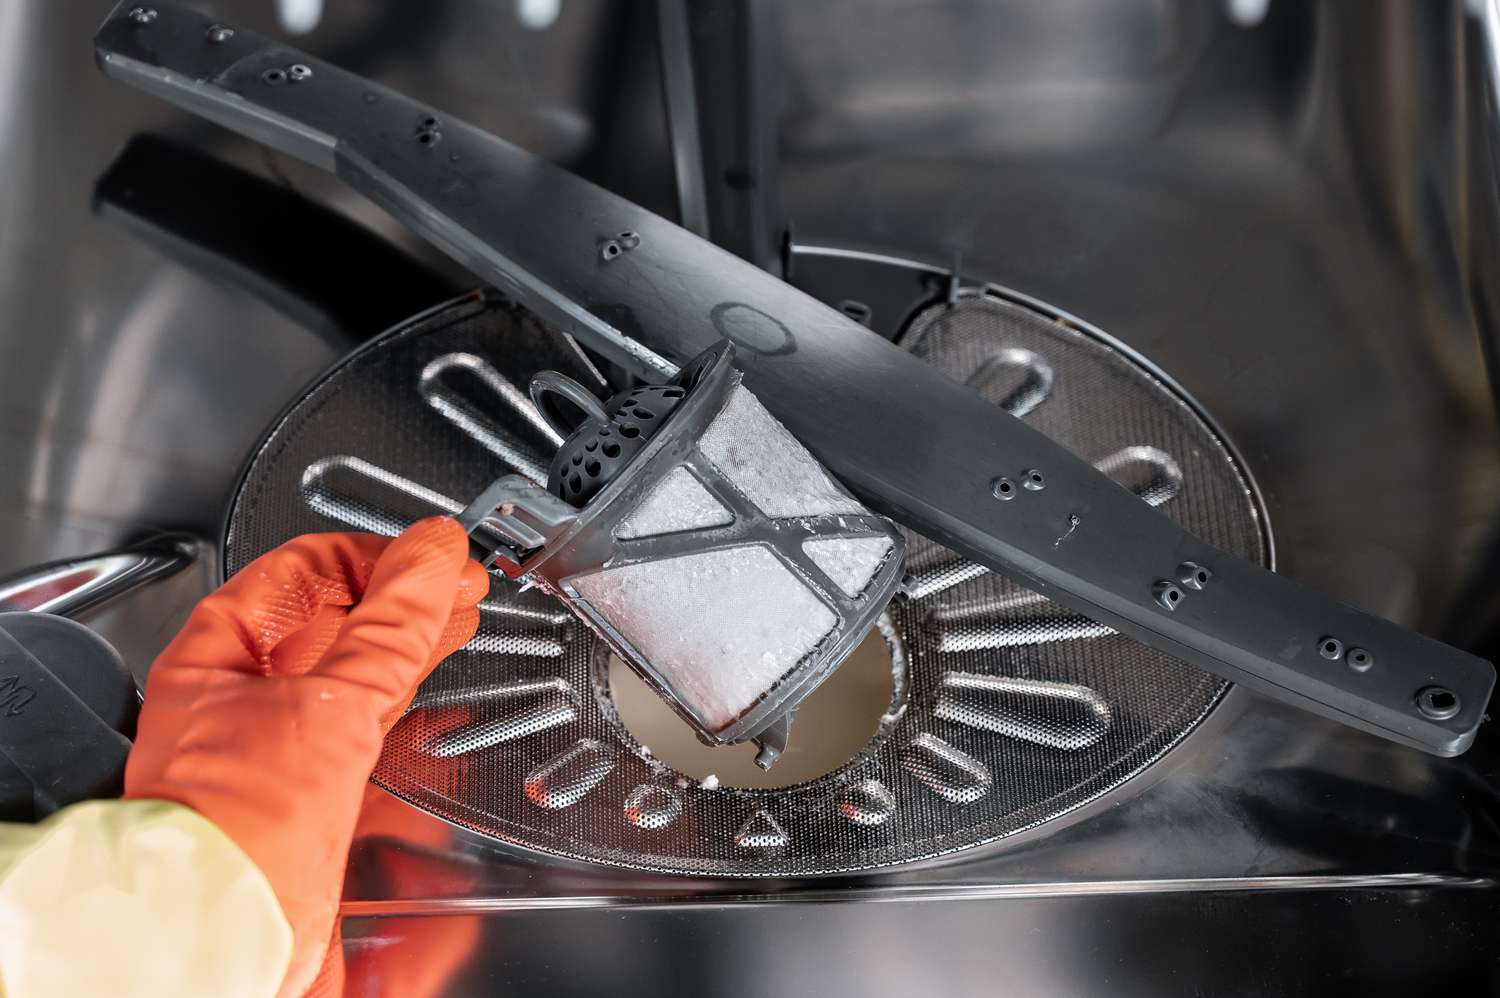 Spülmaschinenfilter mit orangefarbenen Handschuhen aus dem zylindrischen Filter entfernen